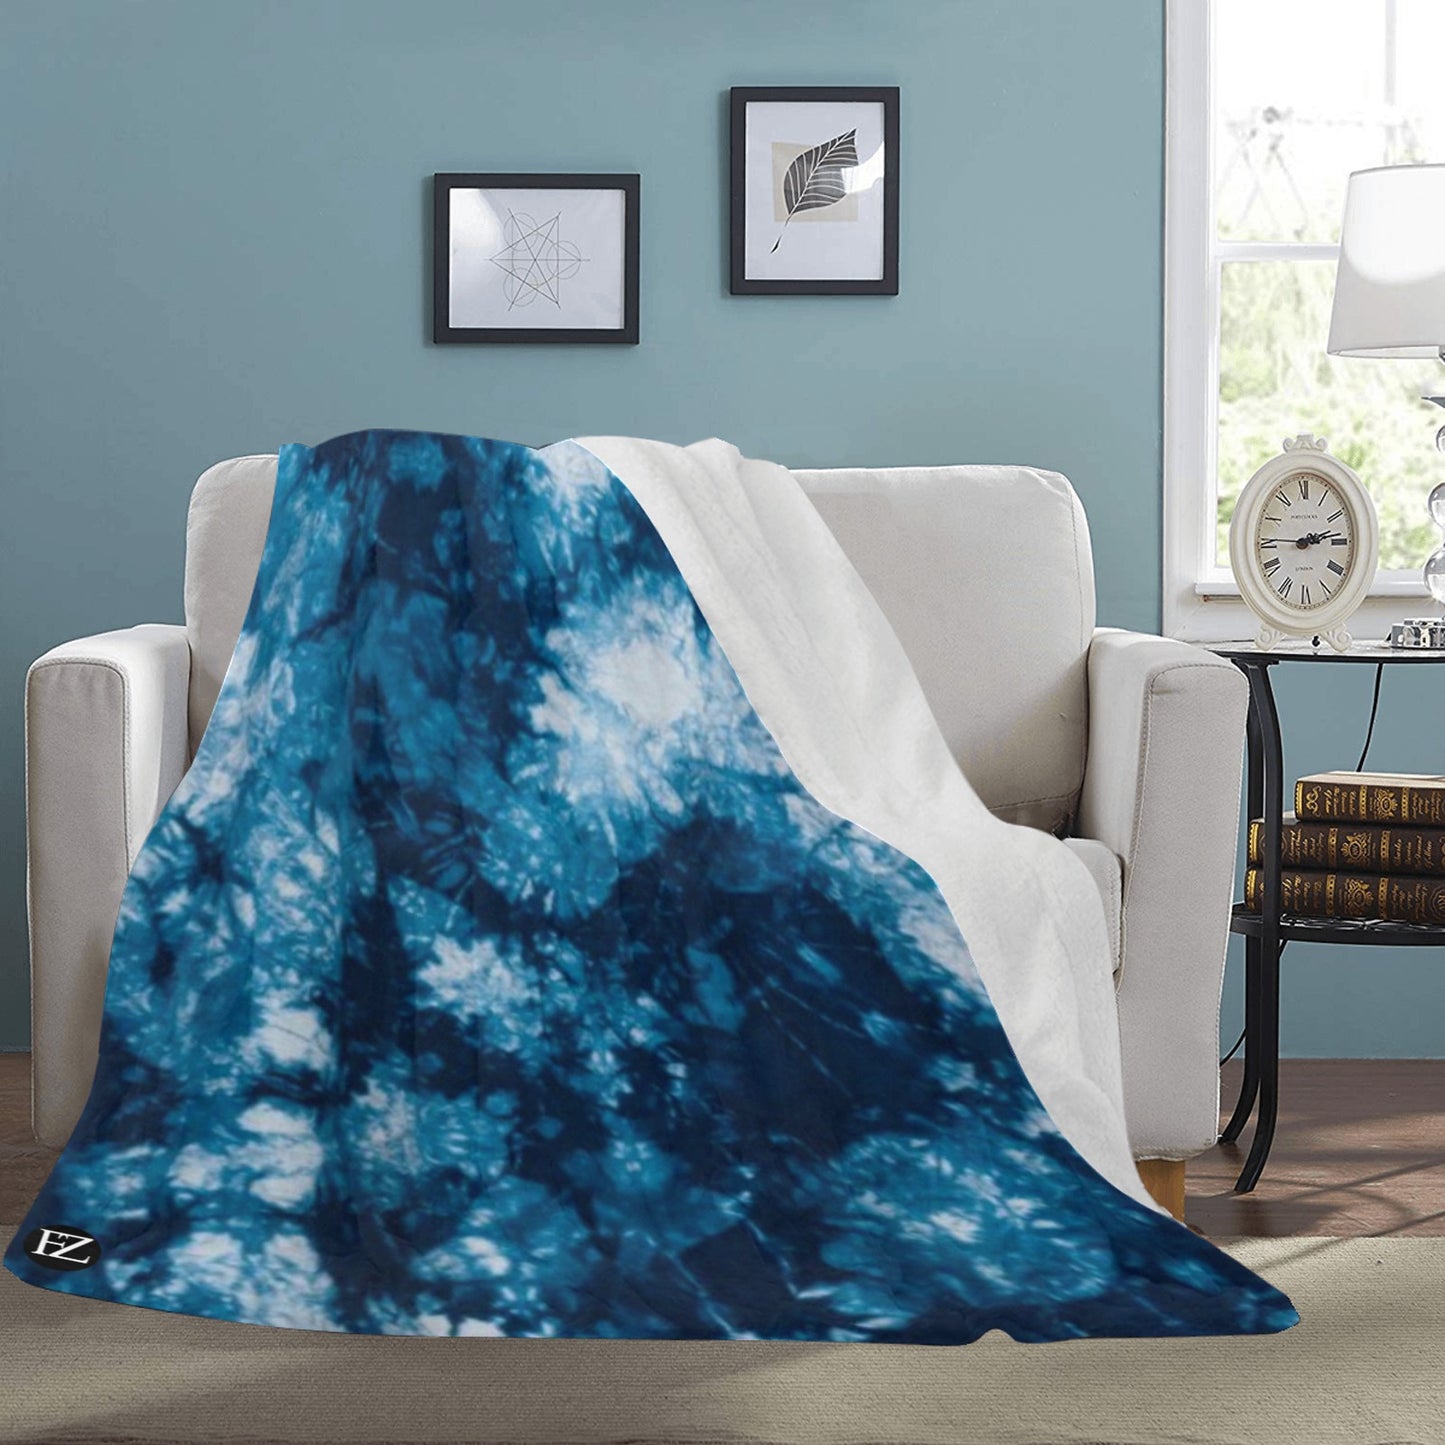 fz blue tye blanket ultra-soft micro fleece blanket 70"x80"